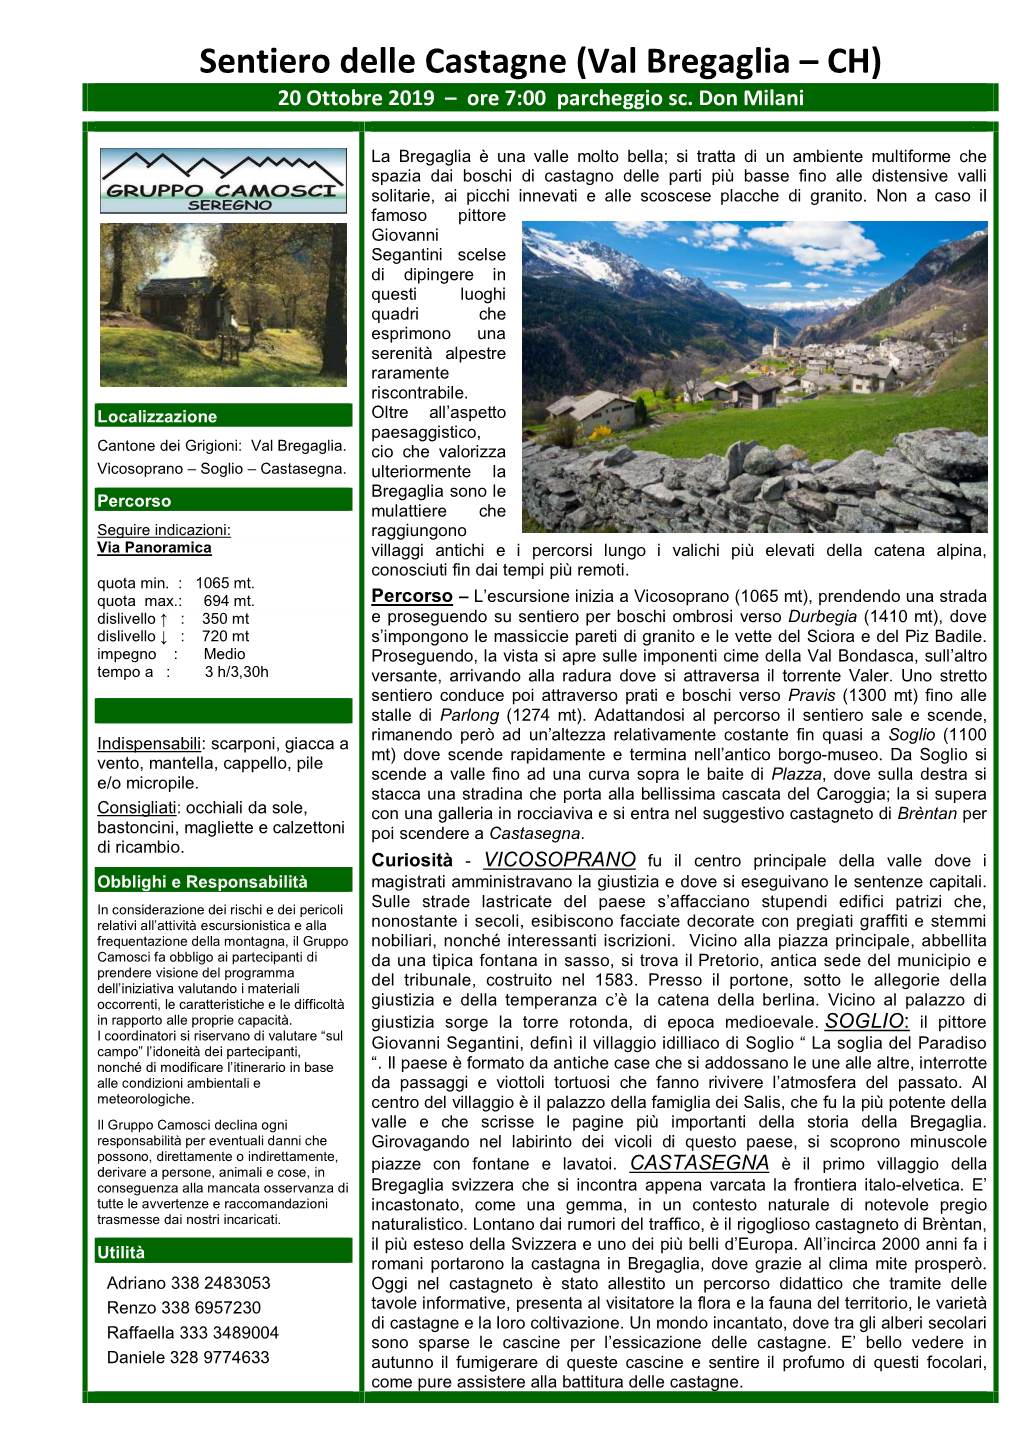 Sentiero Delle Castagne (Val Bregaglia – CH) 20 Ottobre 2019 – Ore 7:00 Parcheggio Sc